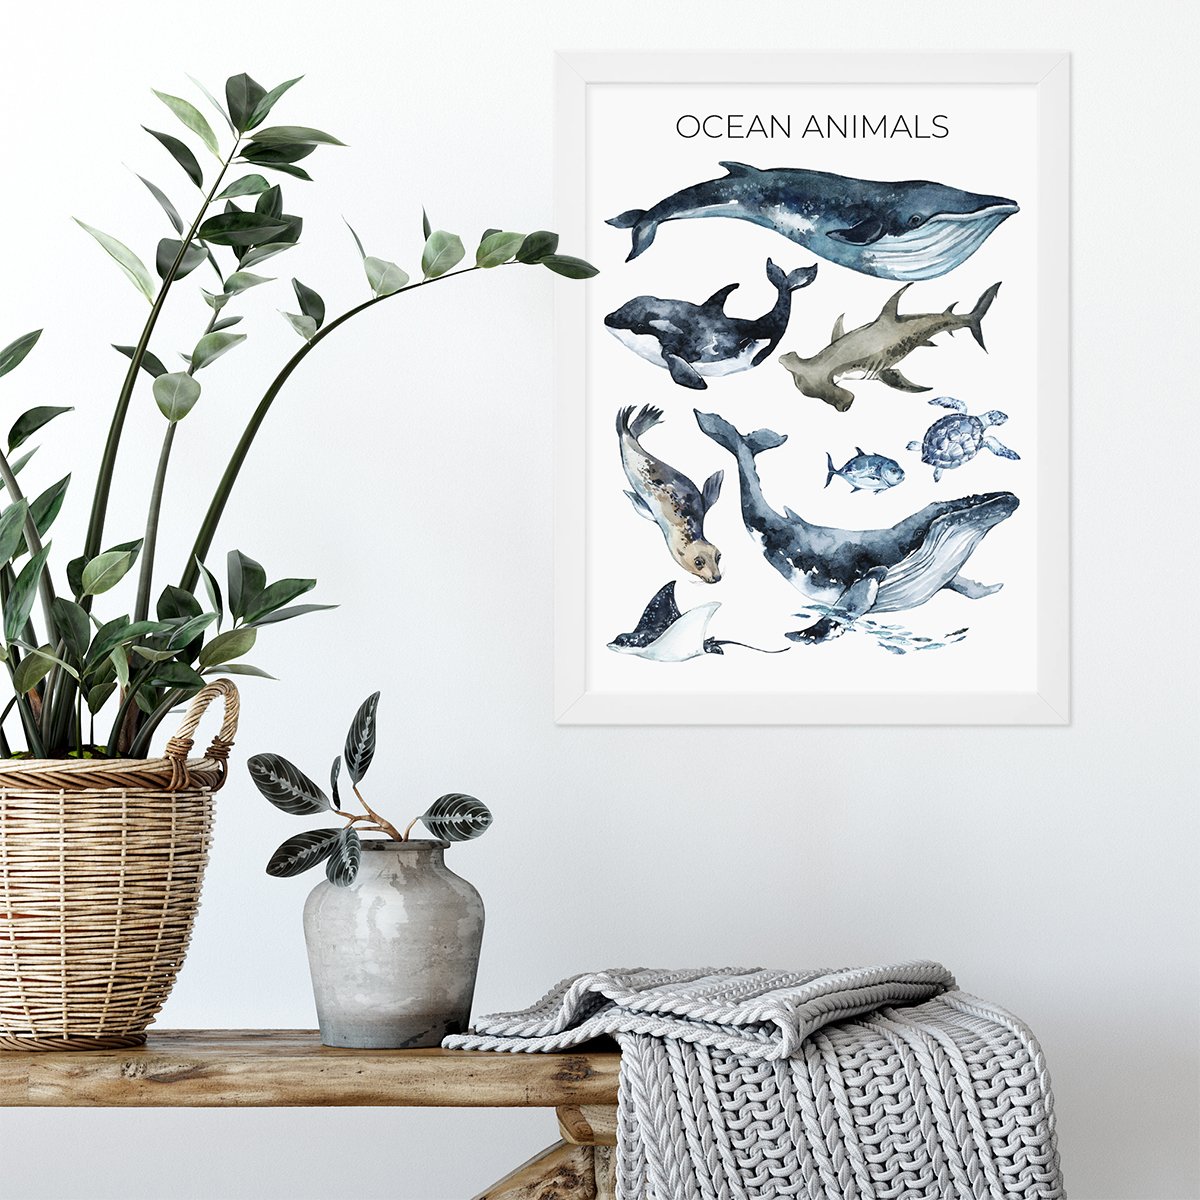 Zwierzęta oceaniczne - ocean animals - plakat z biała ramką w zestawie